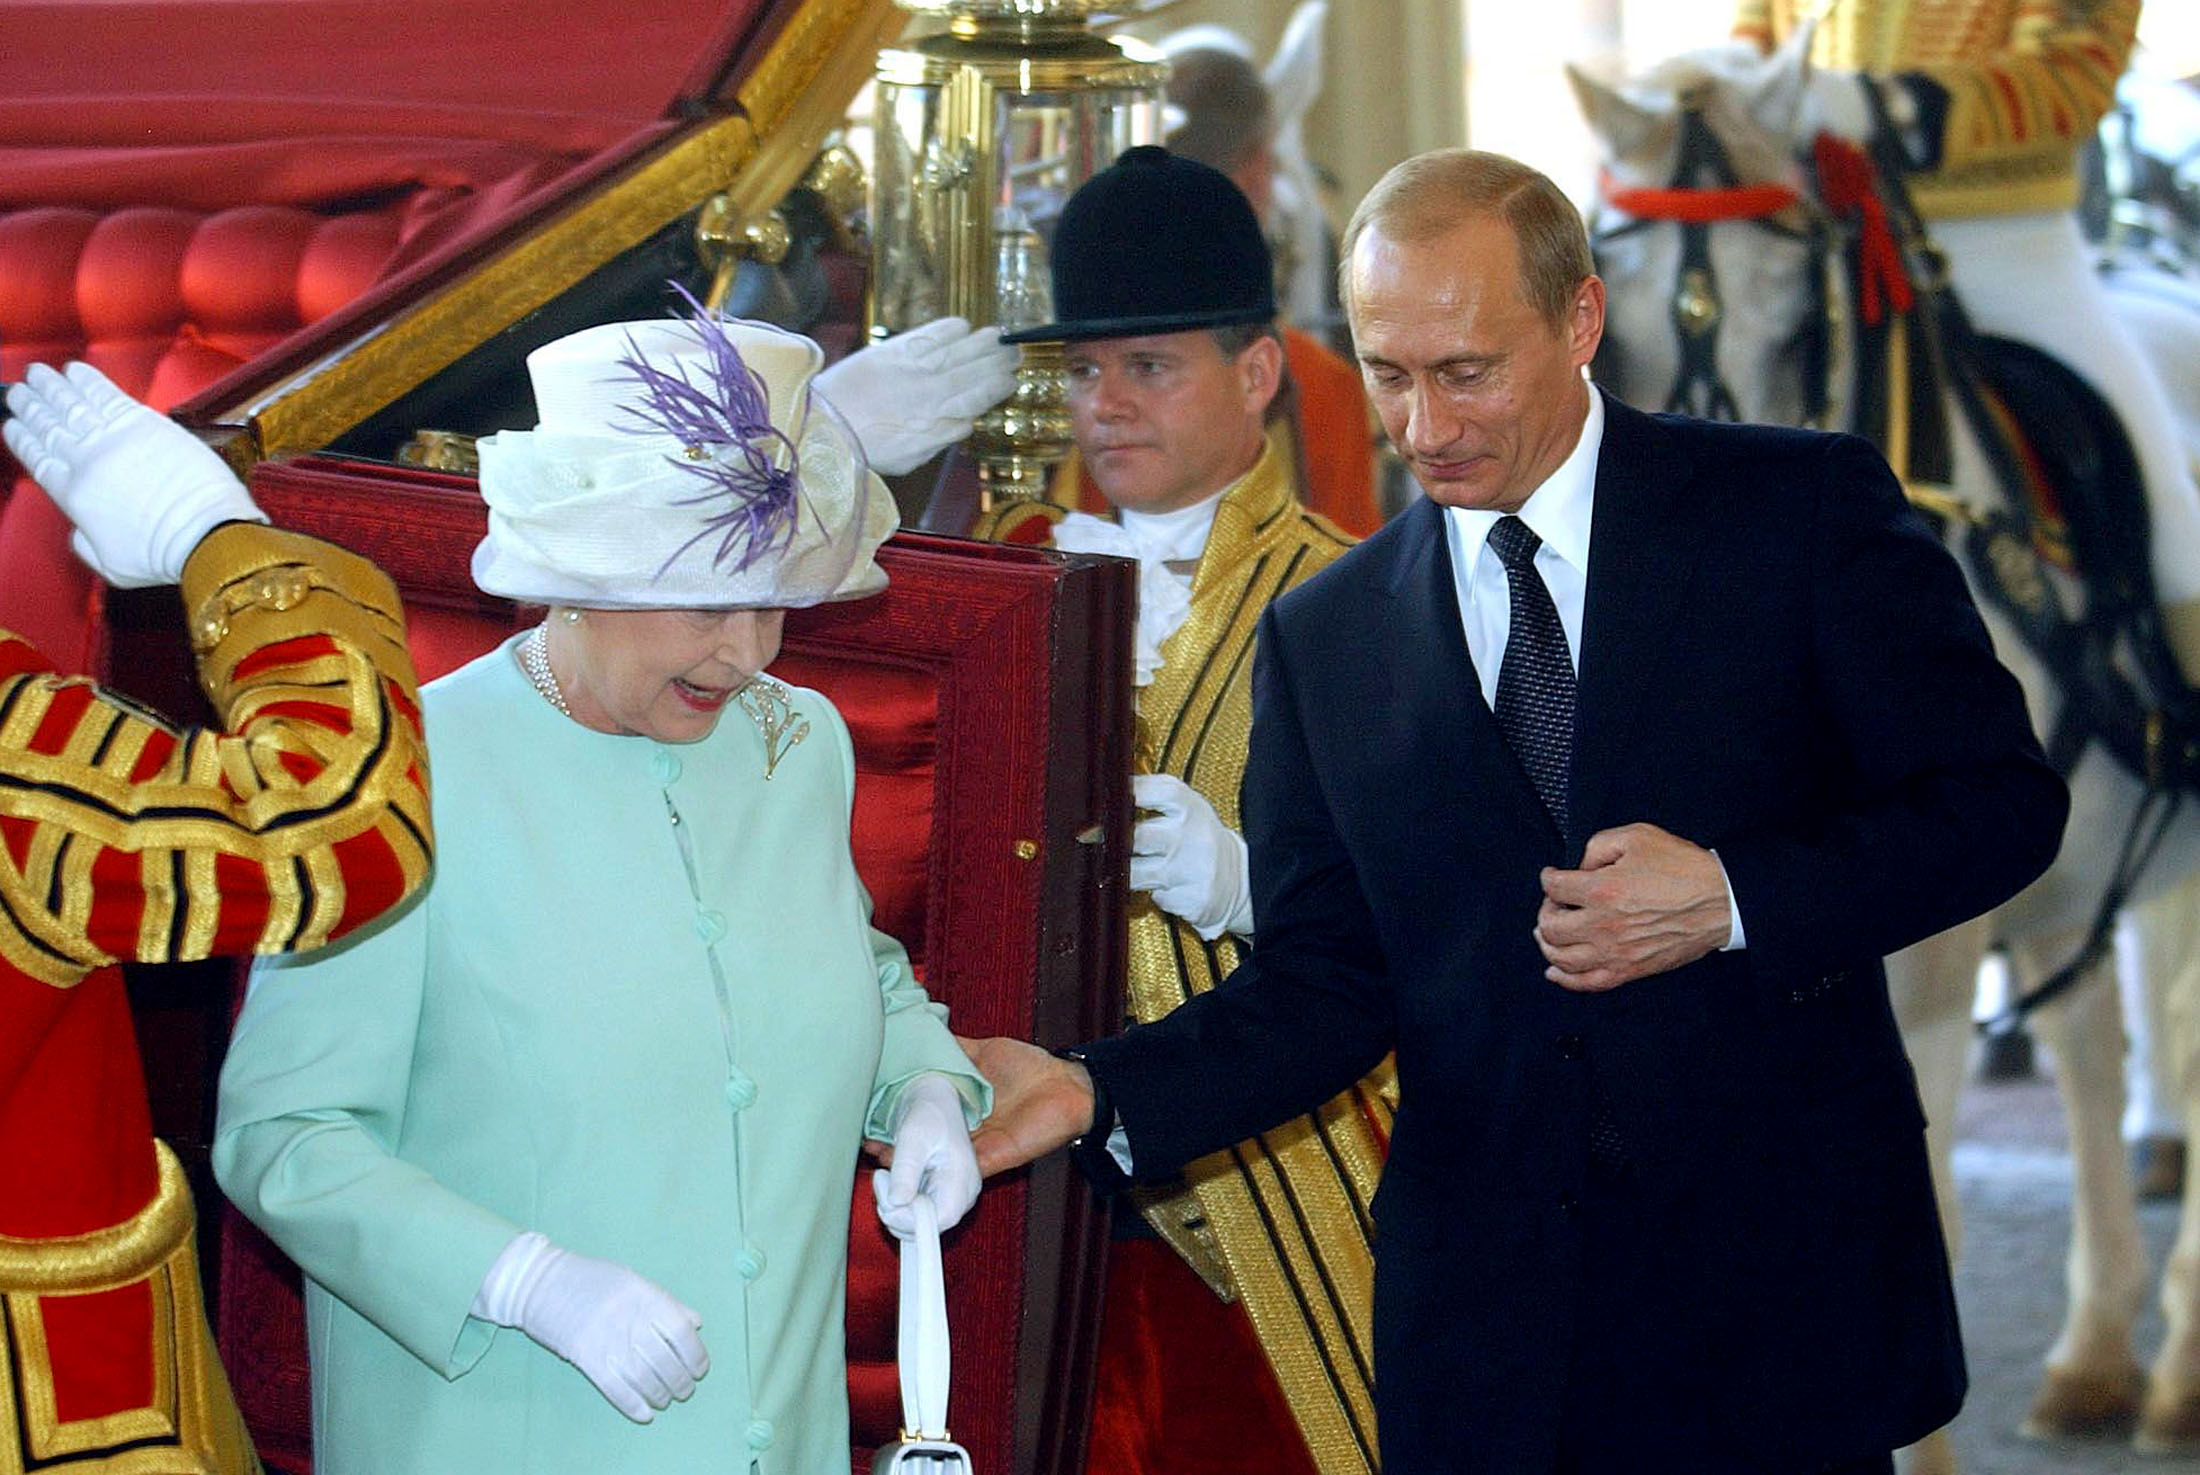 Heute feiert die britische Queen Elisabeth II. ihren 90. Geburtstag. Auf dem Foto ist sie mit Wladimir Putin während eines Treffens in London im Juni 2003 zu sehen.